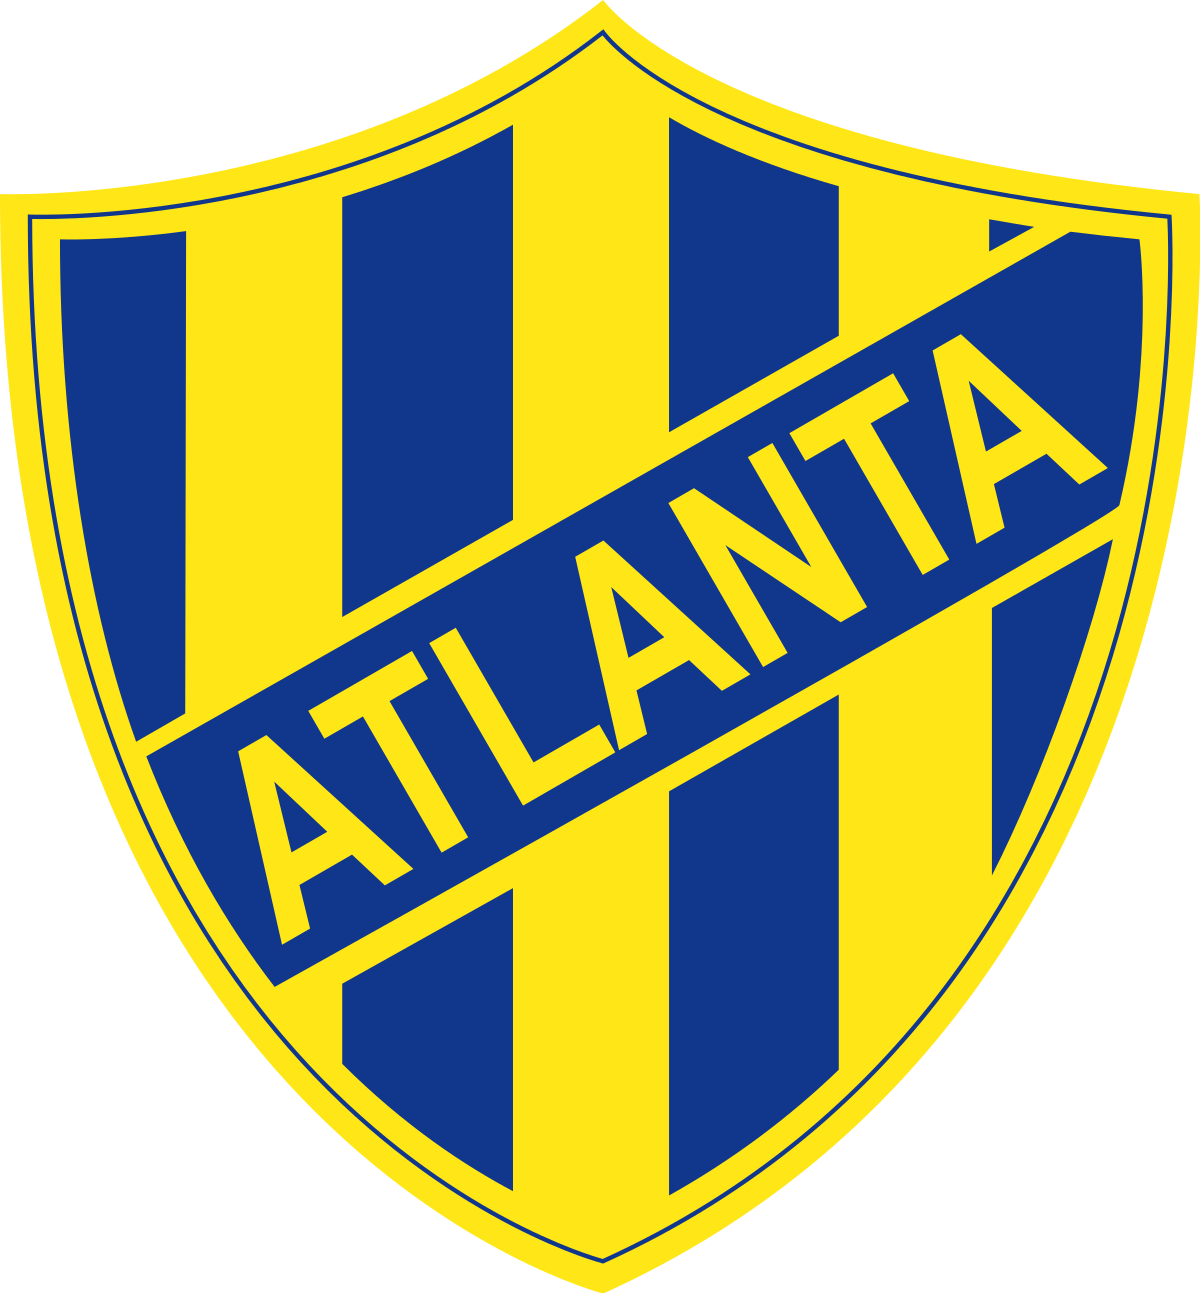 Wappen CA Atlanta